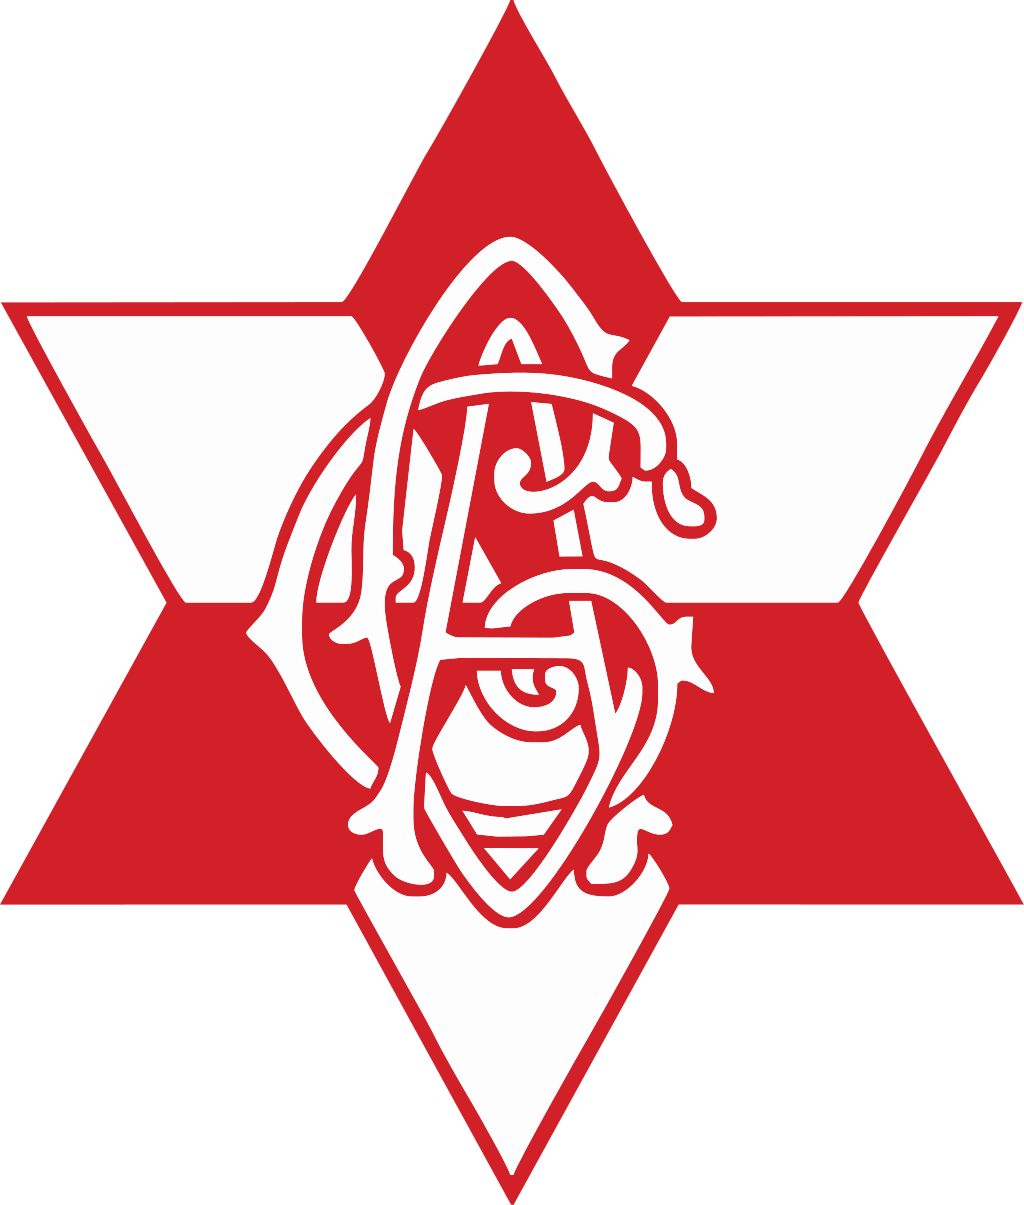 KF Spartak Tirana - Wikiwand